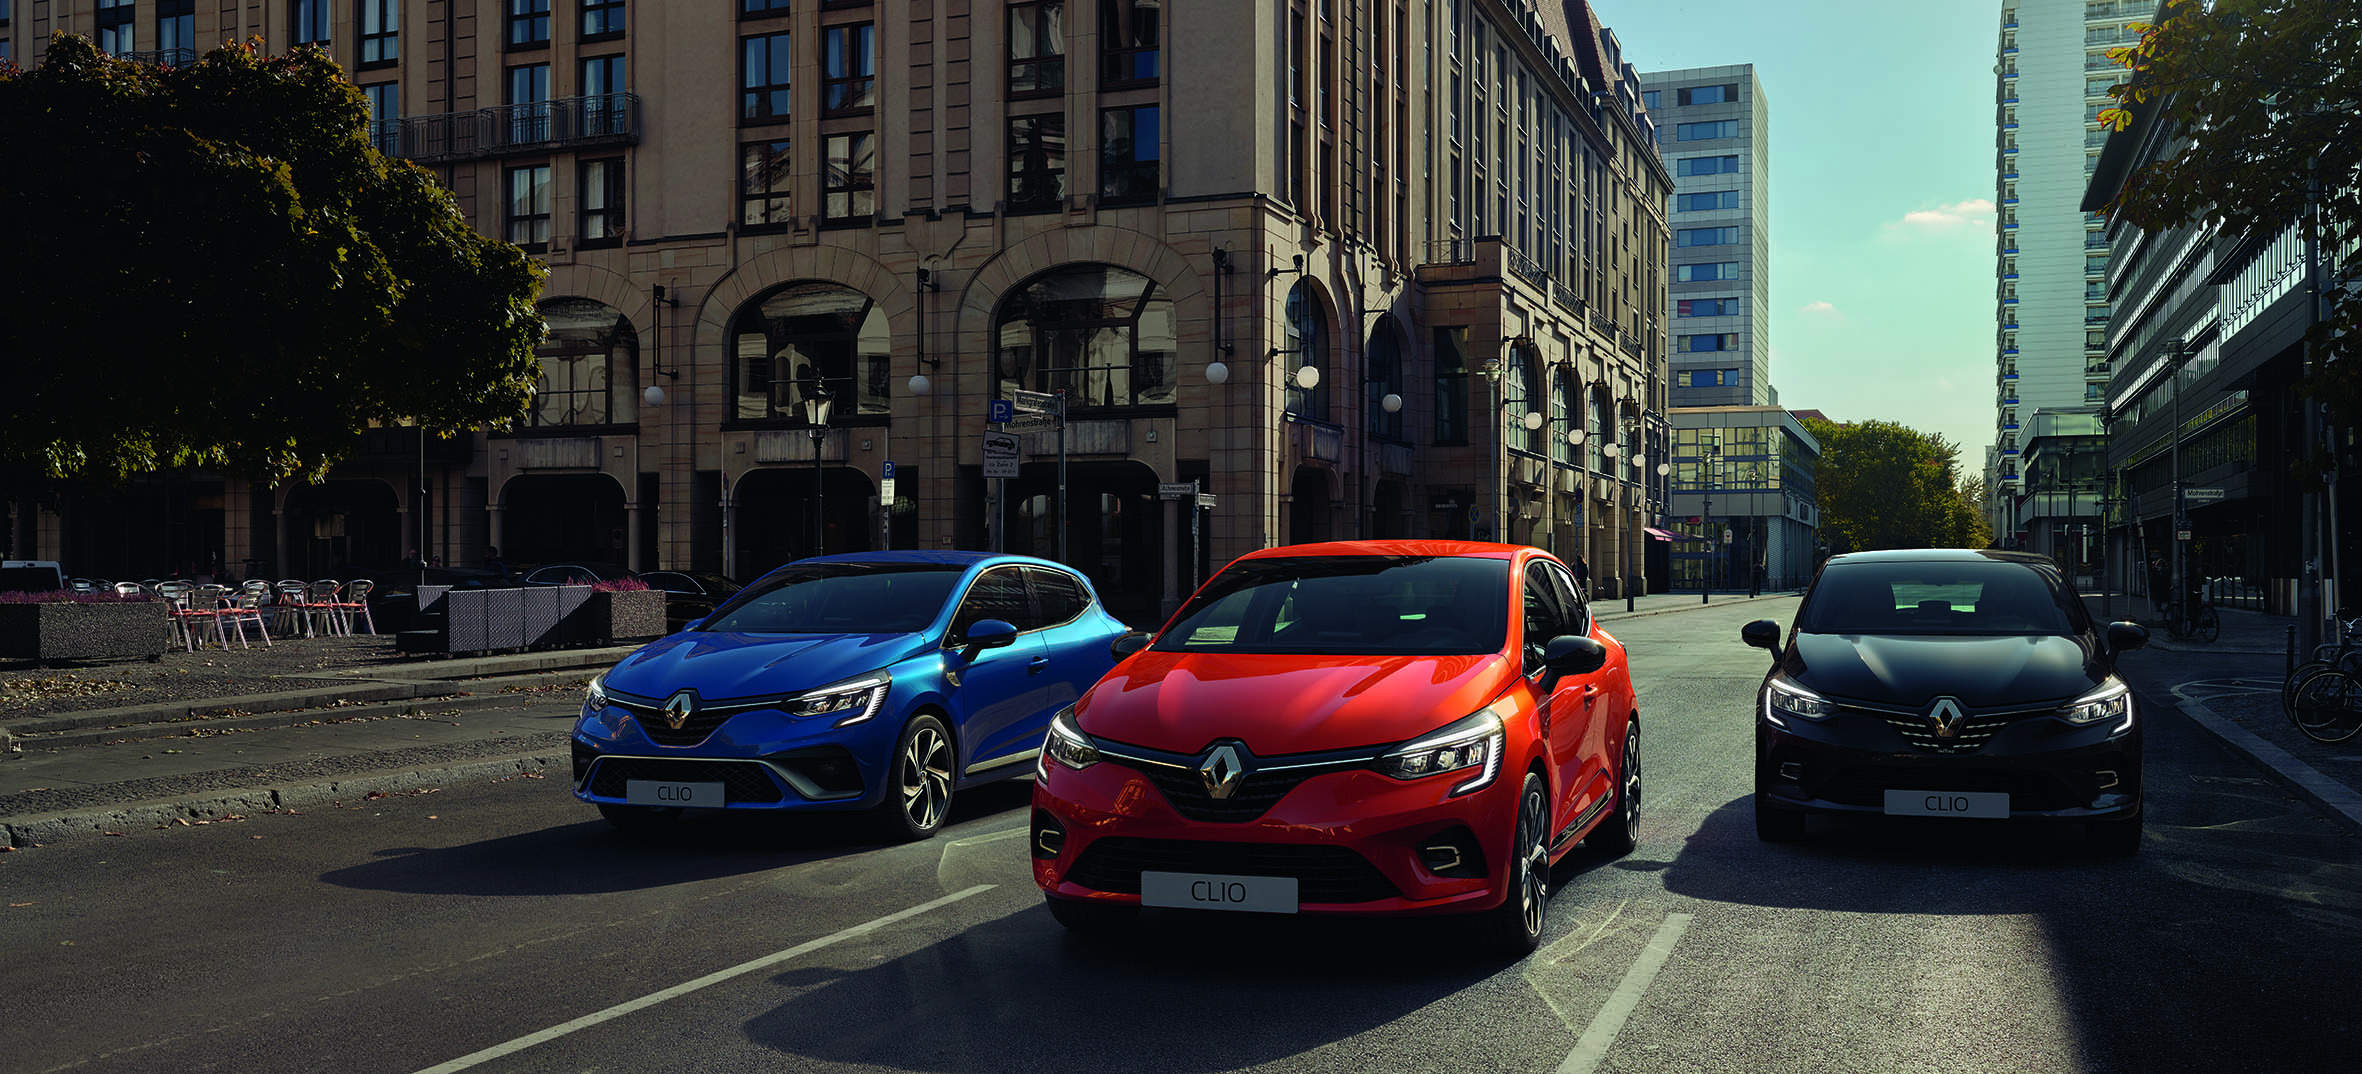 Παγκόσμια πρεμιέρα στο Σαλόνι αυτοκινήτου της Γενεύης το νέο Renault CLIO